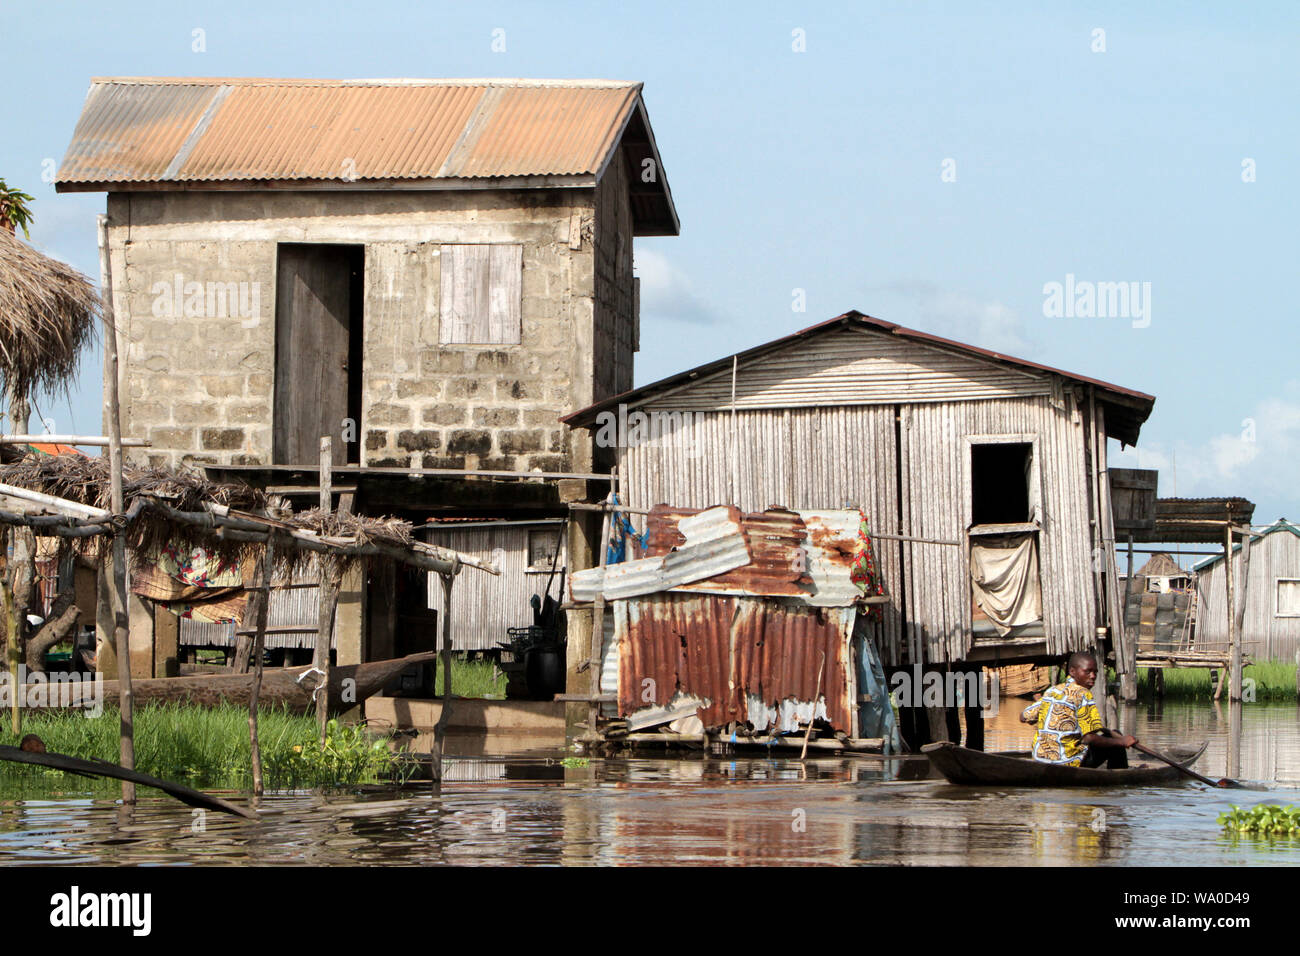 Maisons sur pilotis construites sur l'eau du lac Noukoué à 25 kilomètres au nord de Cotonou, capitale économique du pays. Ganvier. Bénin. Stock Photo